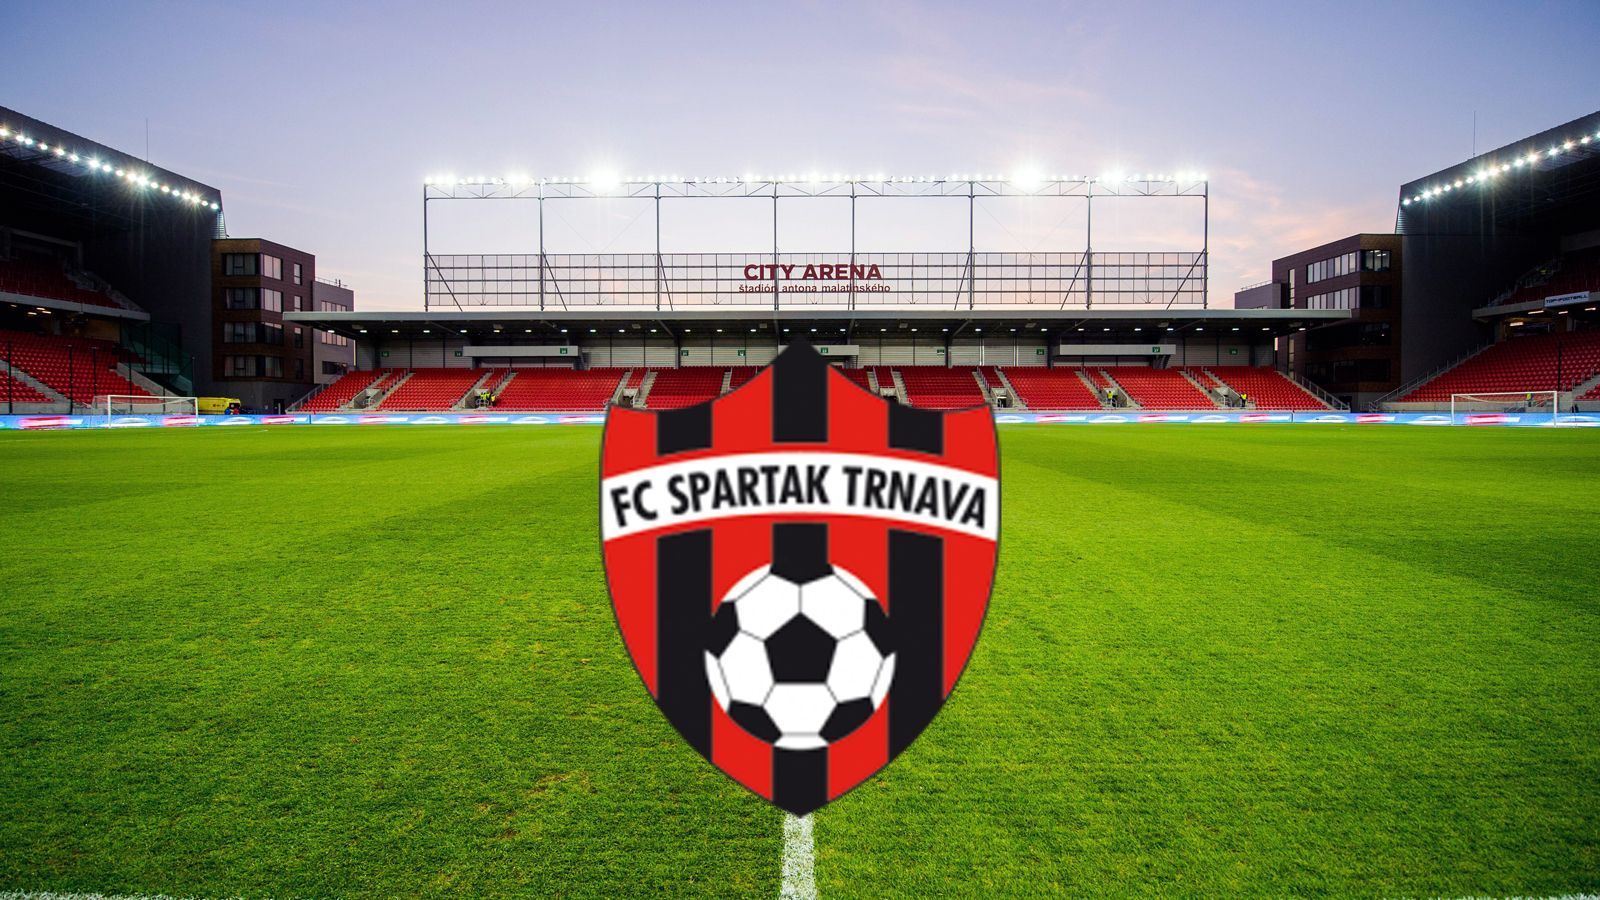 
                <strong>Spartak Trnava (Slowakei)</strong><br>
                Durchschnittsalter der eingesetzten Spieler: 25,79 Jahre
              